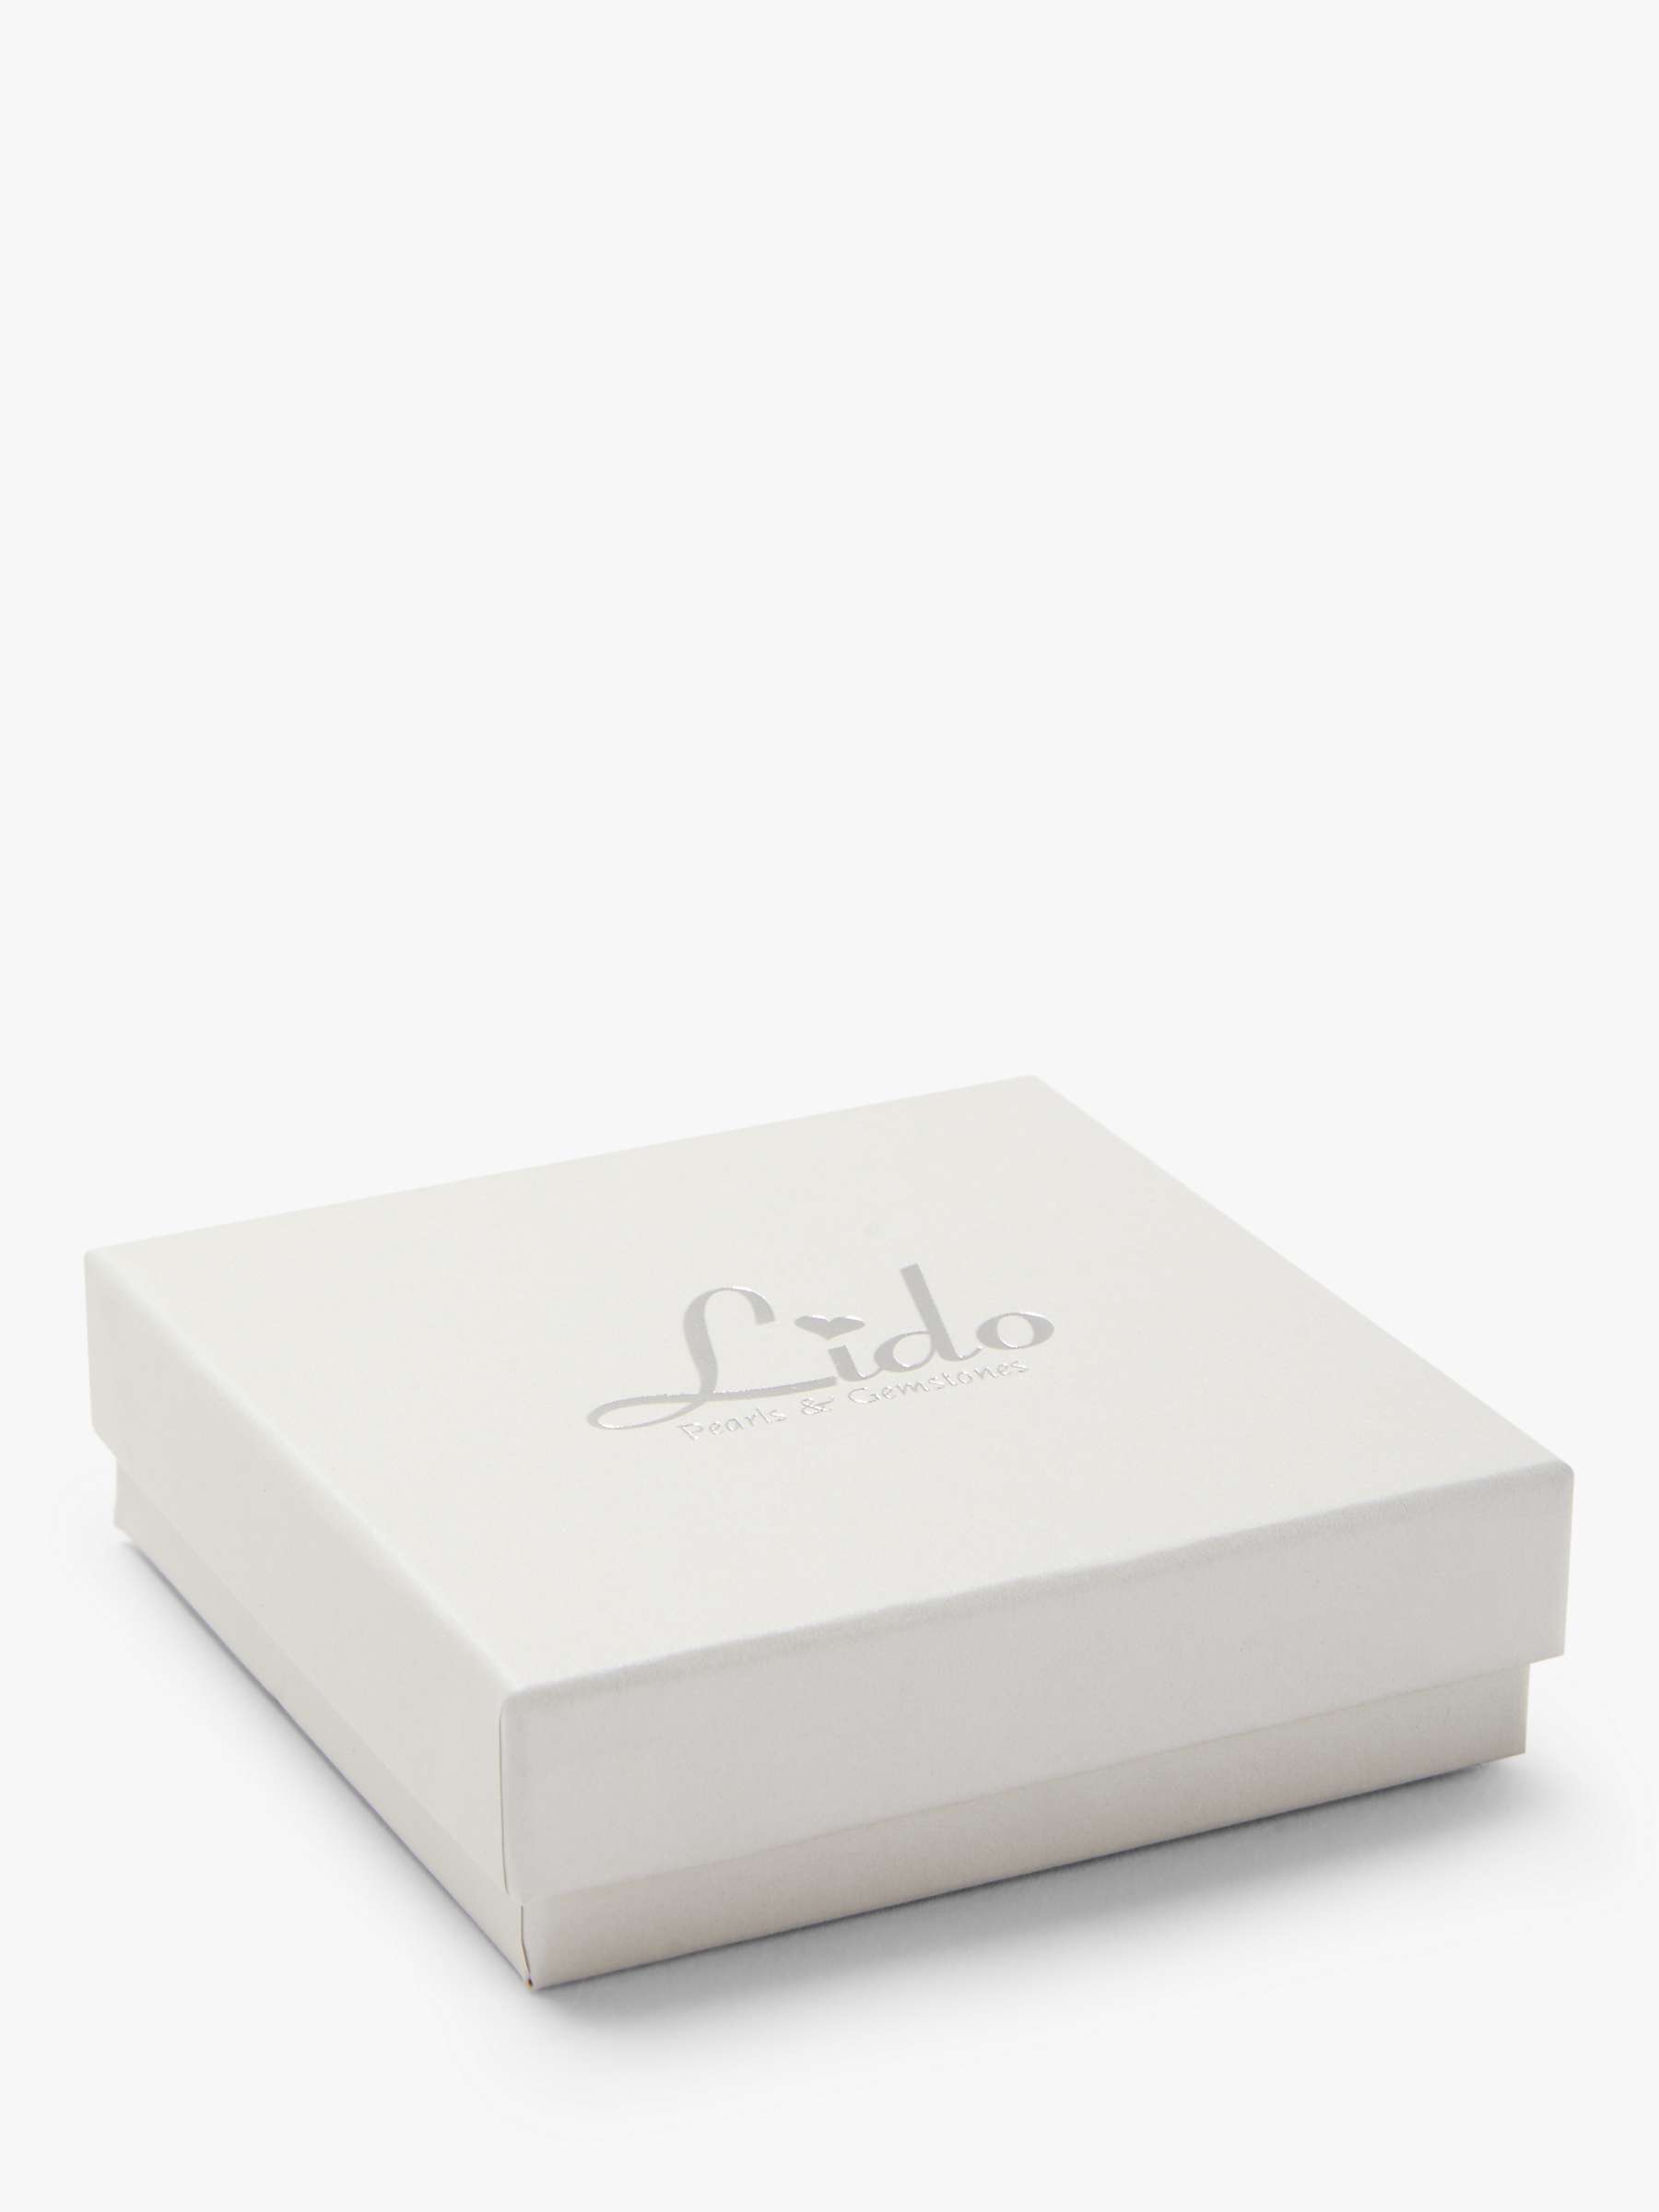 Buy Lido Leaf Pearl Bracelet, Silver/White Online at johnlewis.com